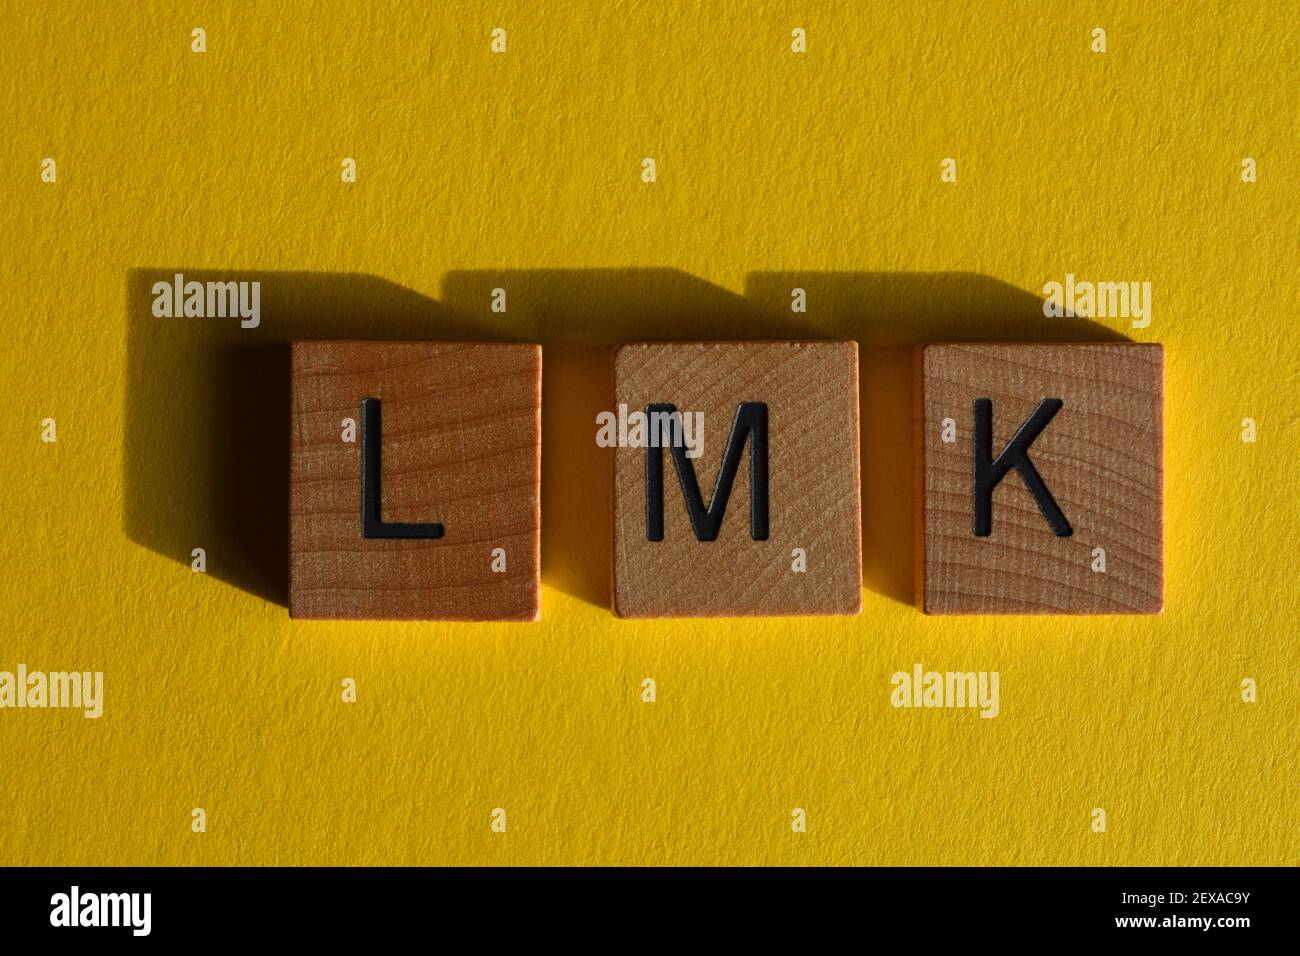 LMK, acronimo di Let Me Know, in lettere alfabetiche in legno isolate su sfondo giallo Foto Stock